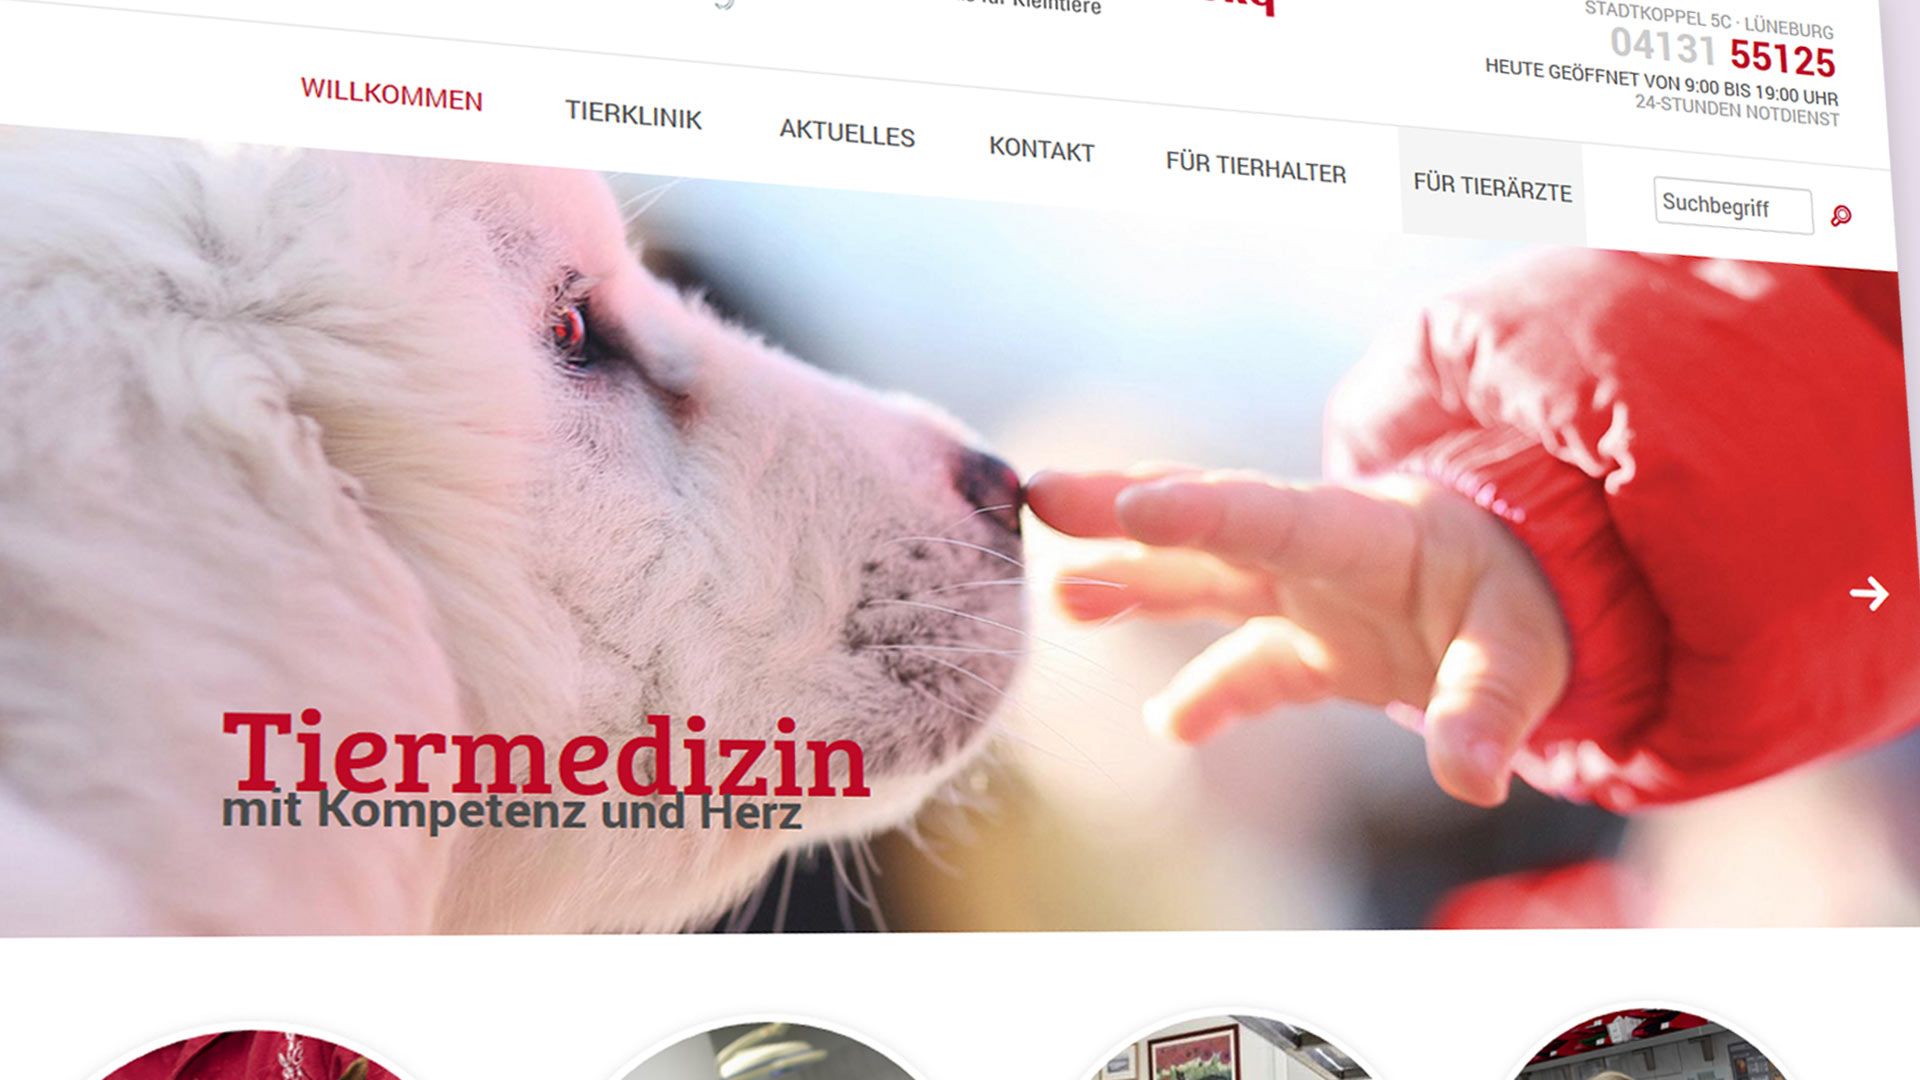 Website Relaunch Tierklinik Lüneburg